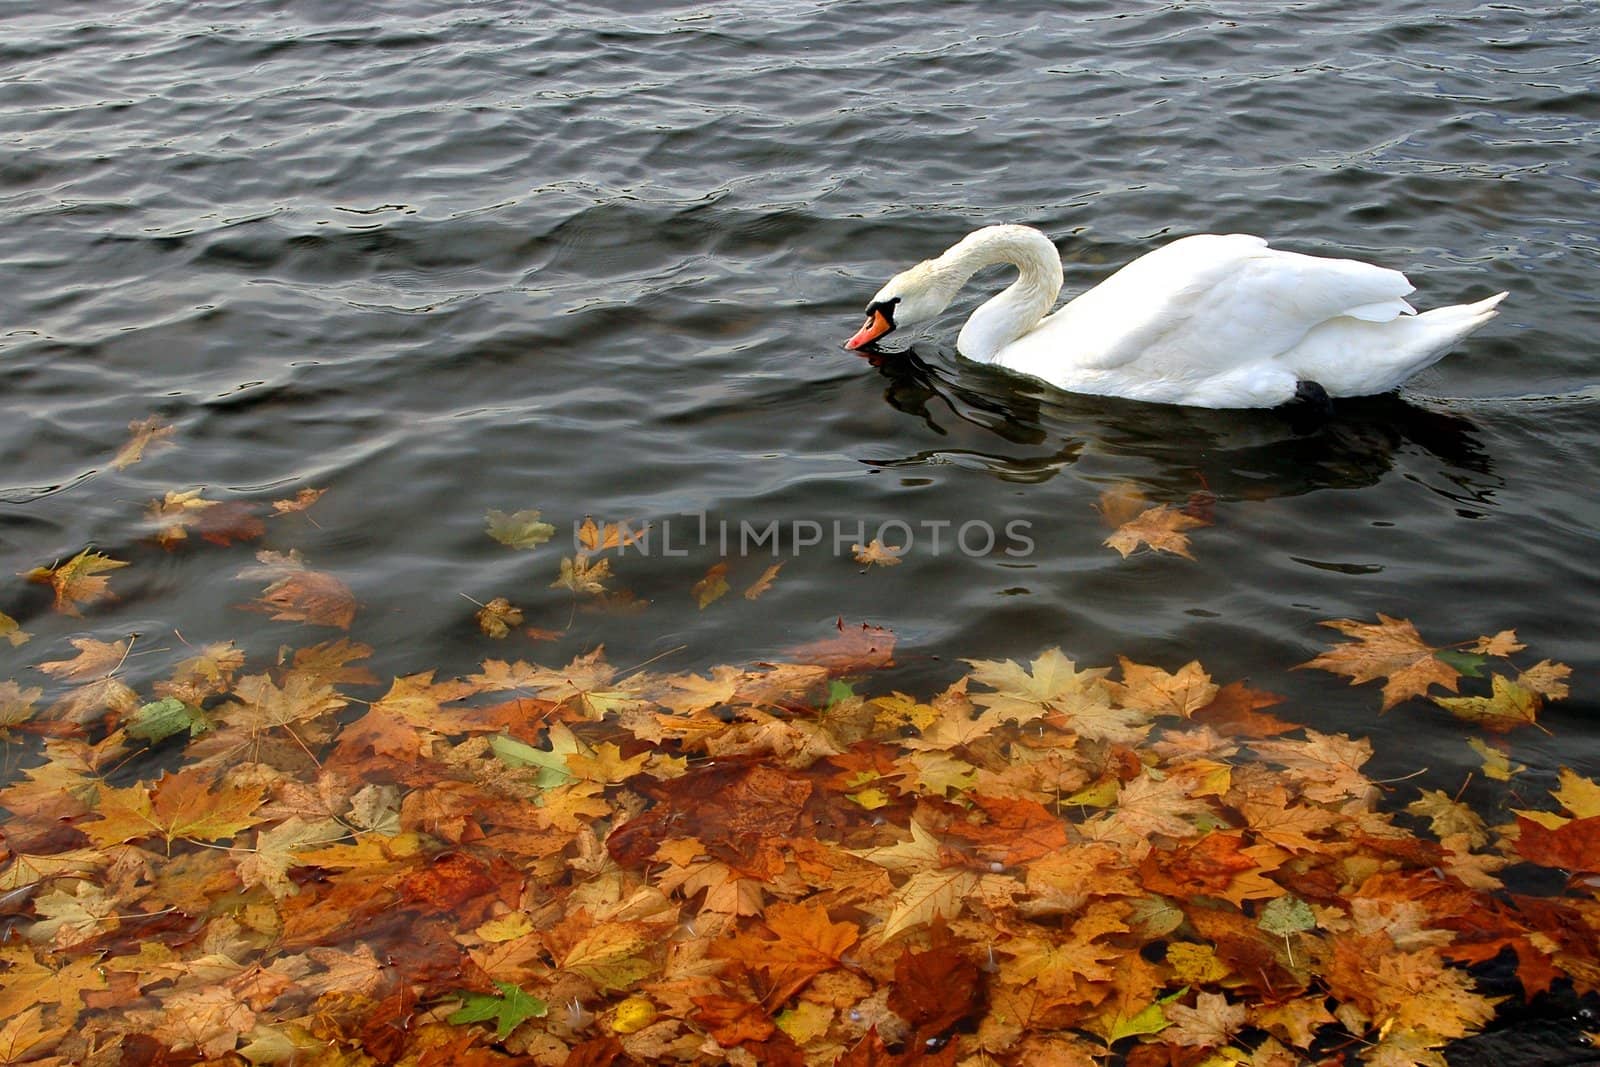 Swan by kobby_dagan